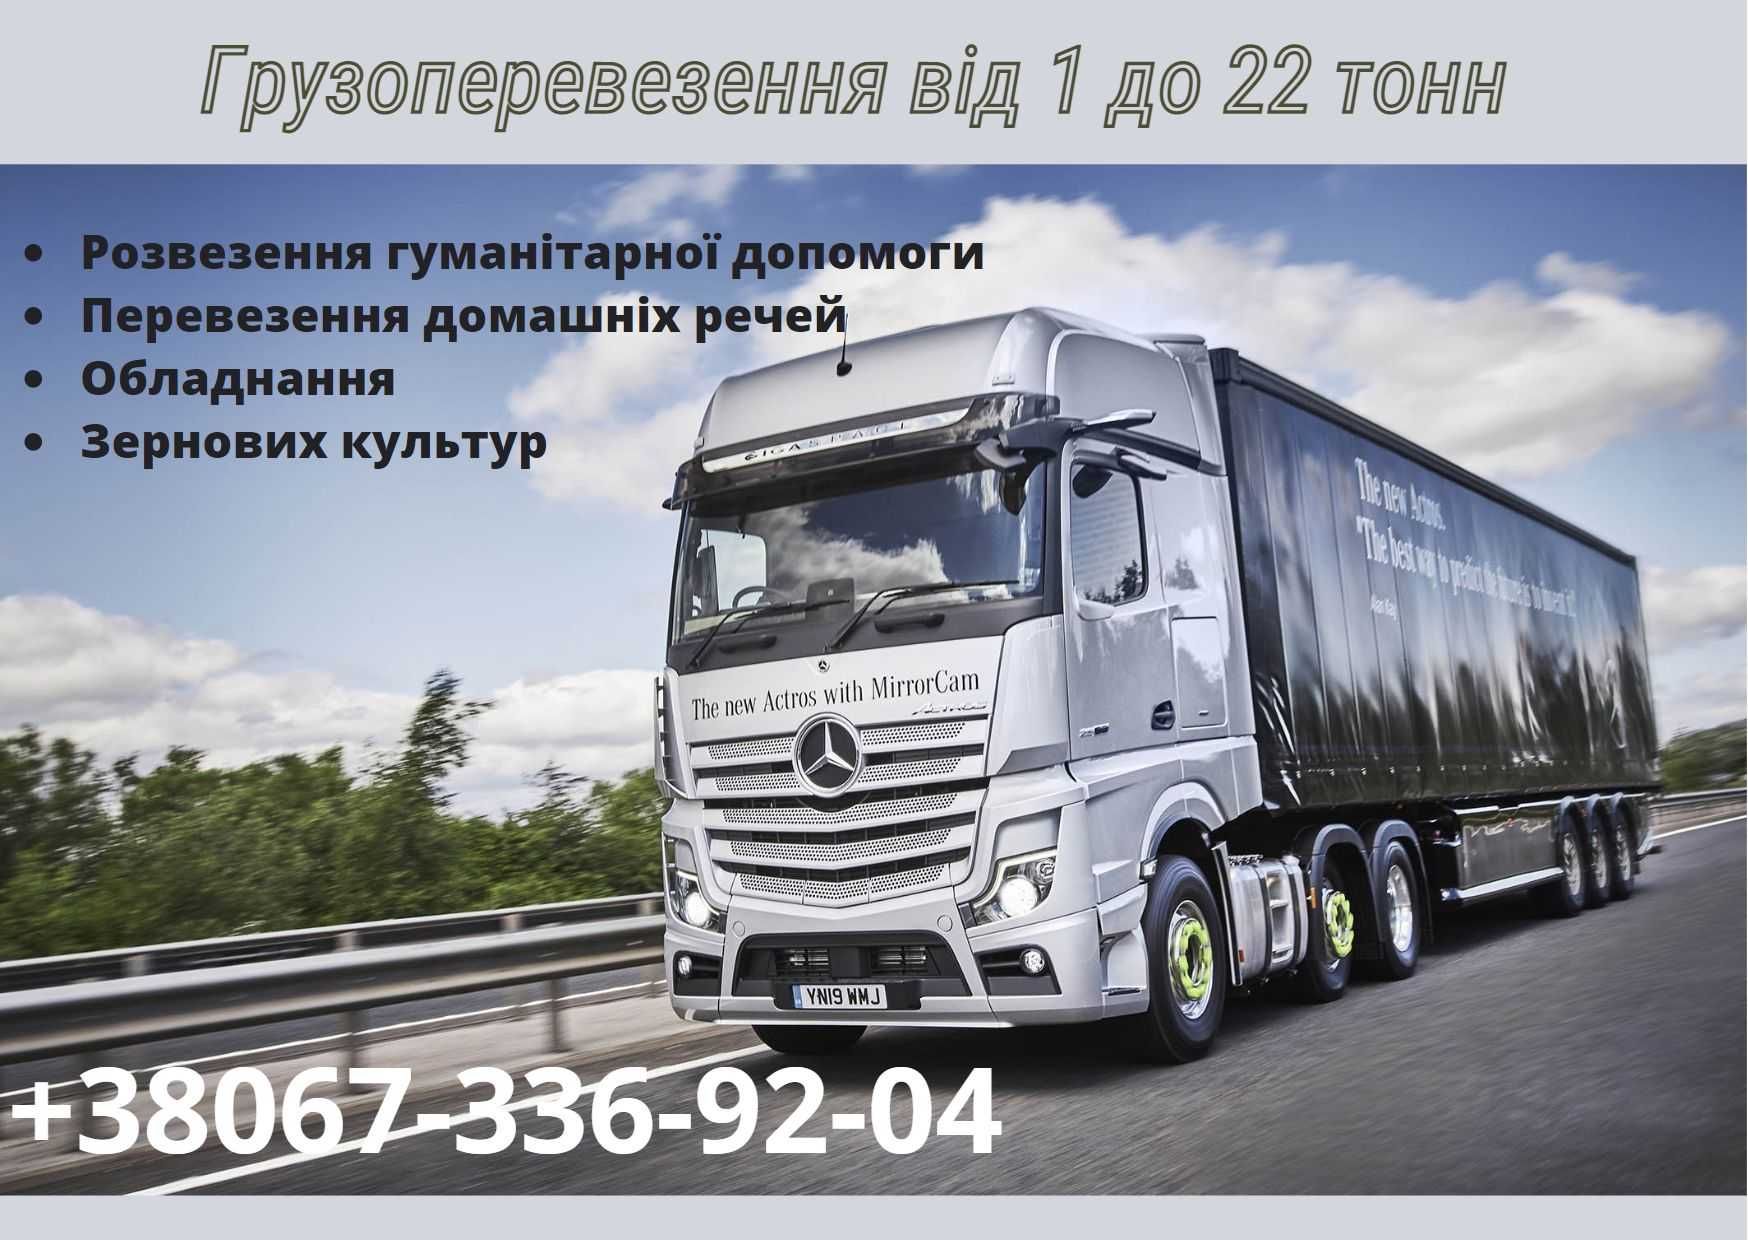 Перевезення по Україні, домашні речі, обладнання,есть грузчики